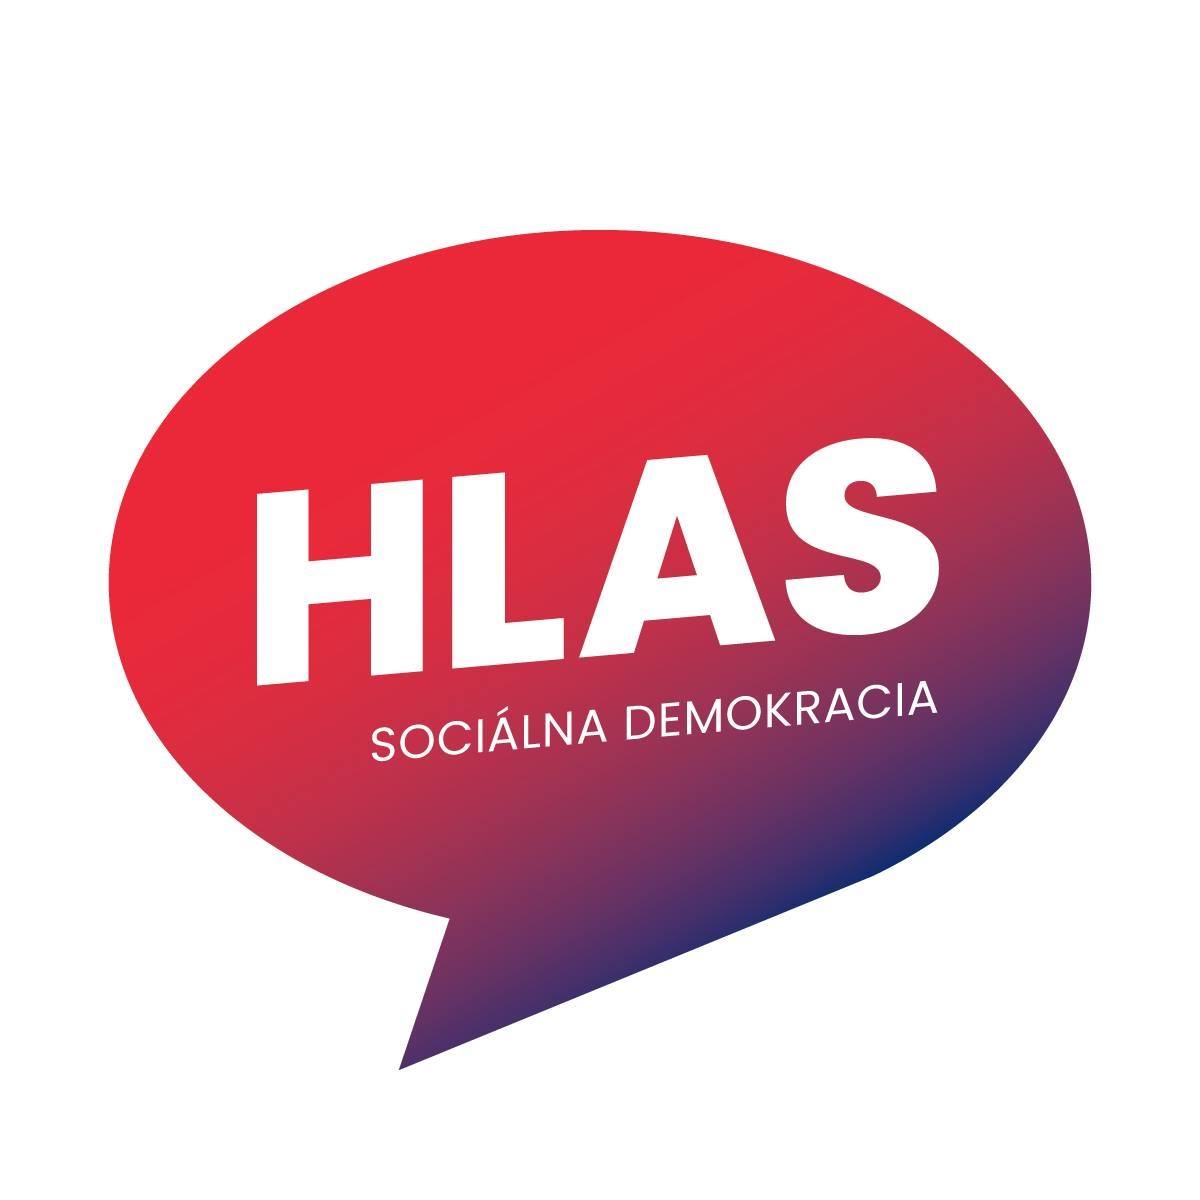 HLAS - sociálna demokracia logo